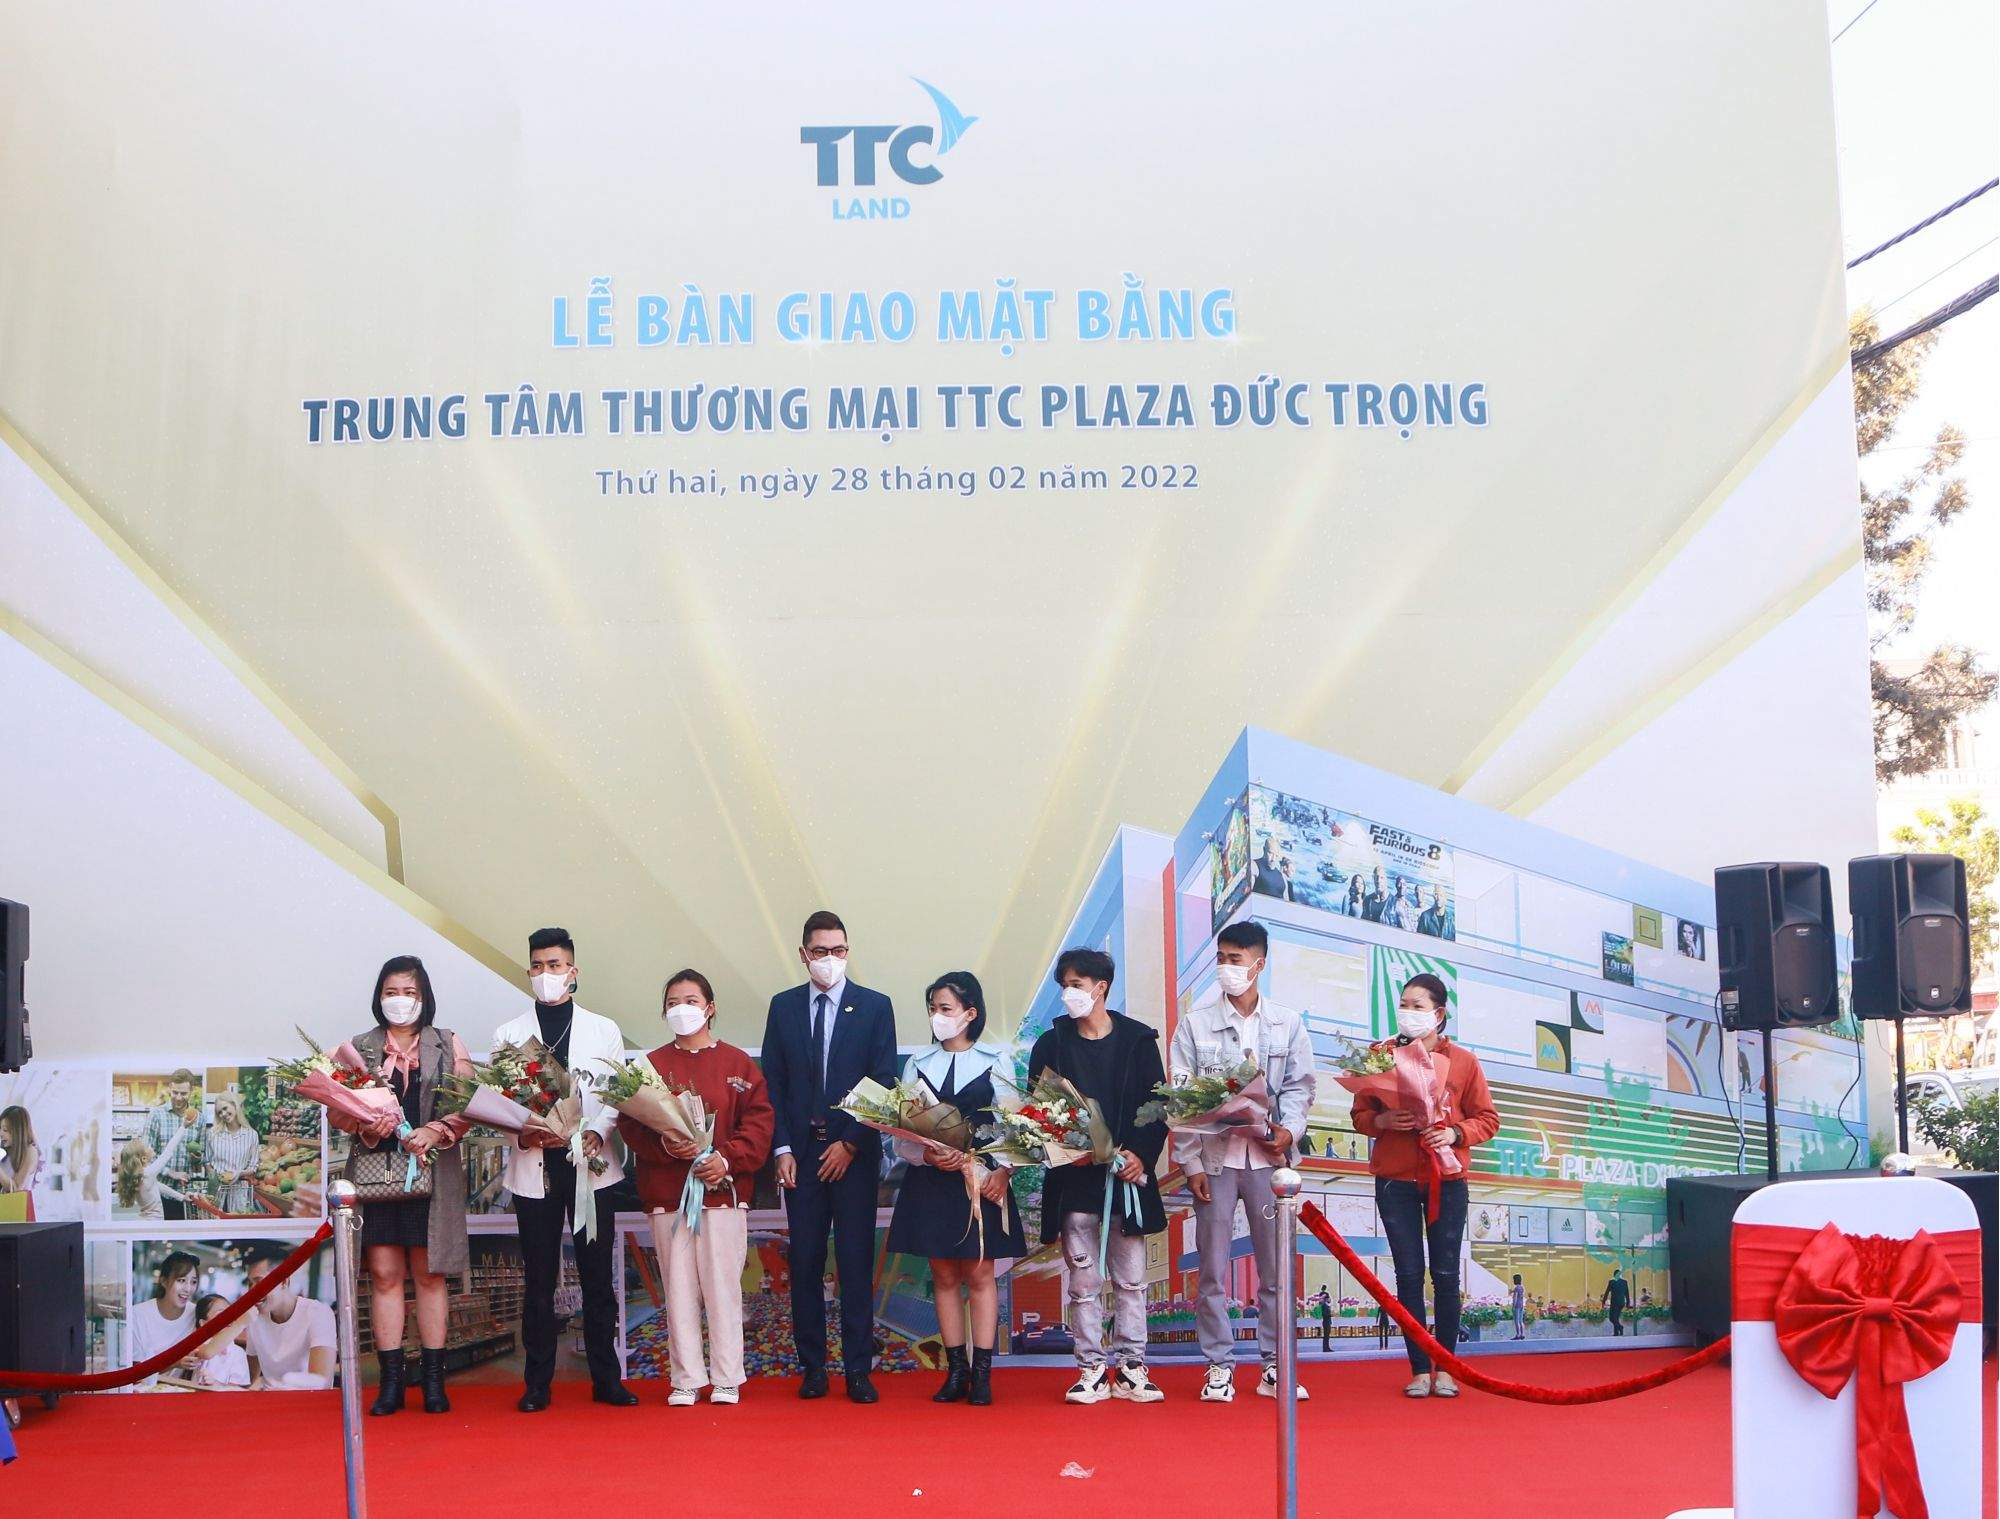 TTC Land tổ chức thành công Lễ bàn giao Mặt bằng TTC Plaza Đức Trọng